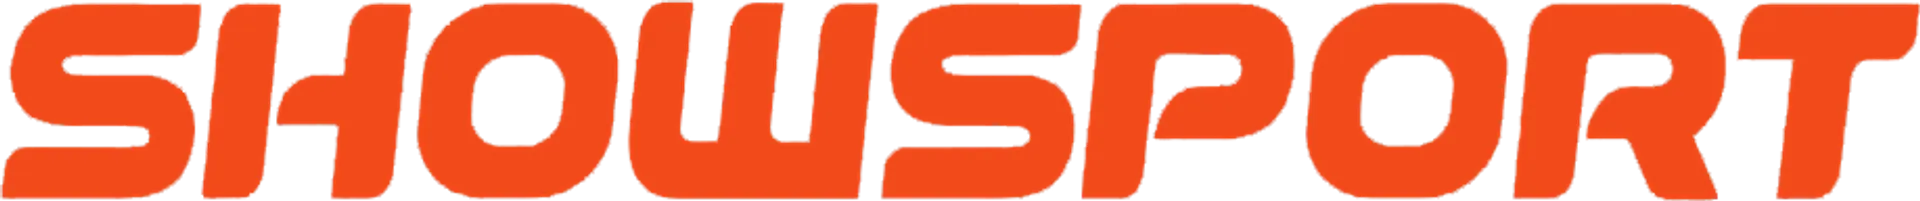 SHOW SPORT logo